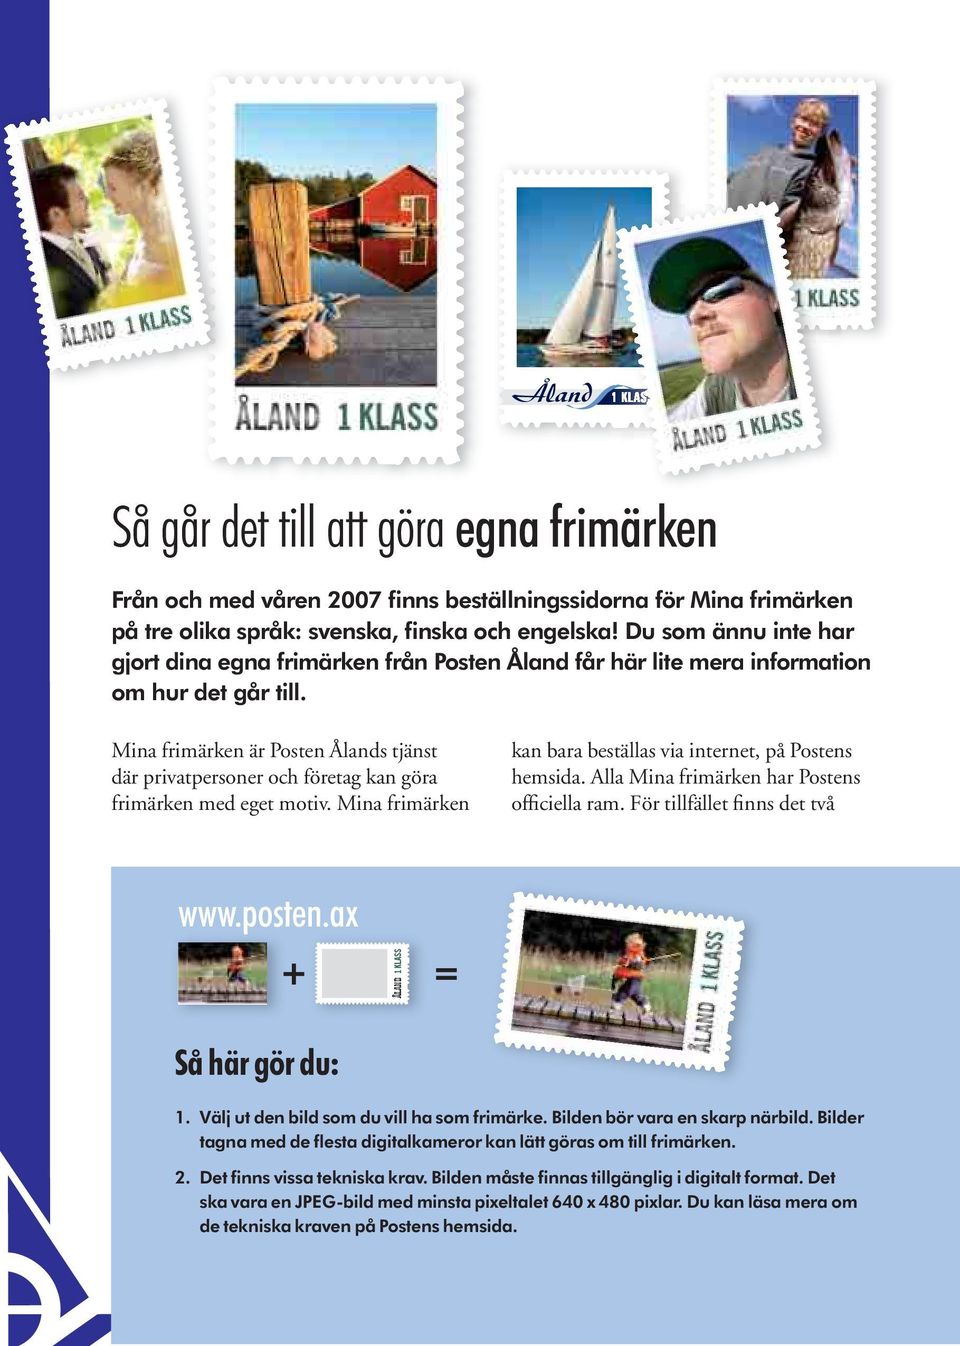 Mina frimärken är Posten Ålands tjänst där privatpersoner och företag kan göra frimärken med eget motiv. Mina frimärken kan bara beställas via internet, på Postens hemsida.